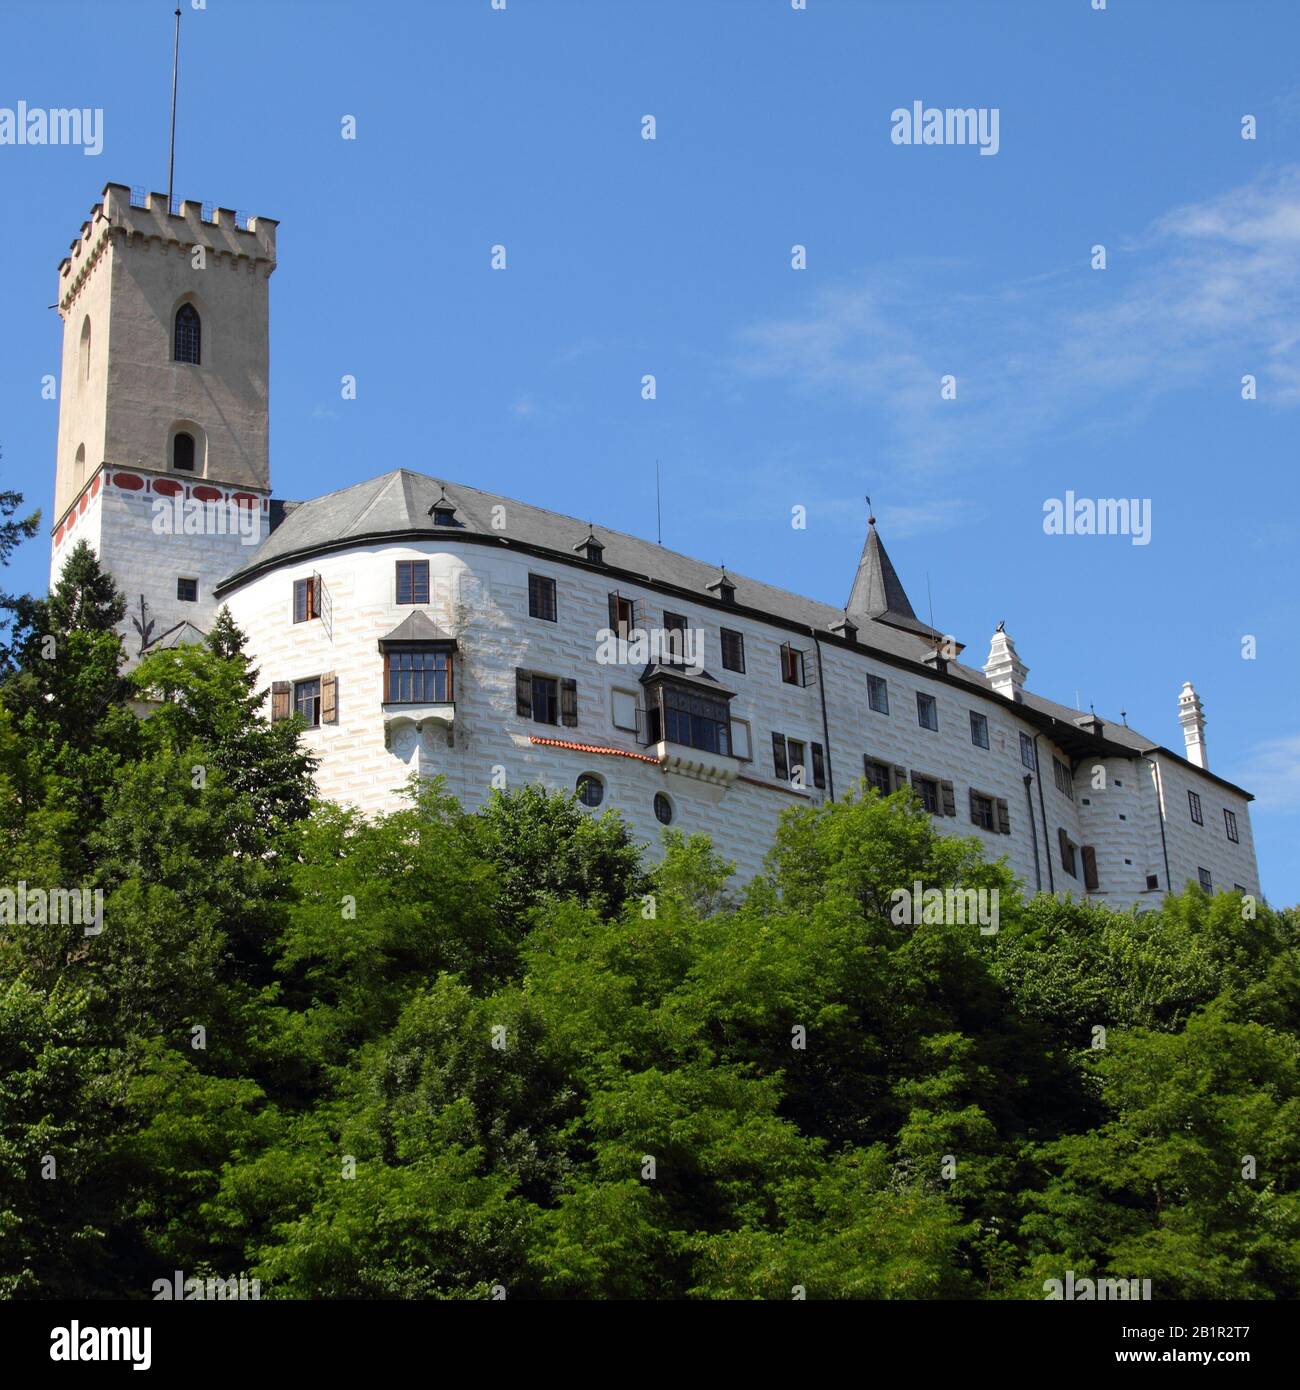 Repubblica Ceca - Castello di Rozmberk nella regione della Boemia meridionale. Composizione quadrata. Foto Stock